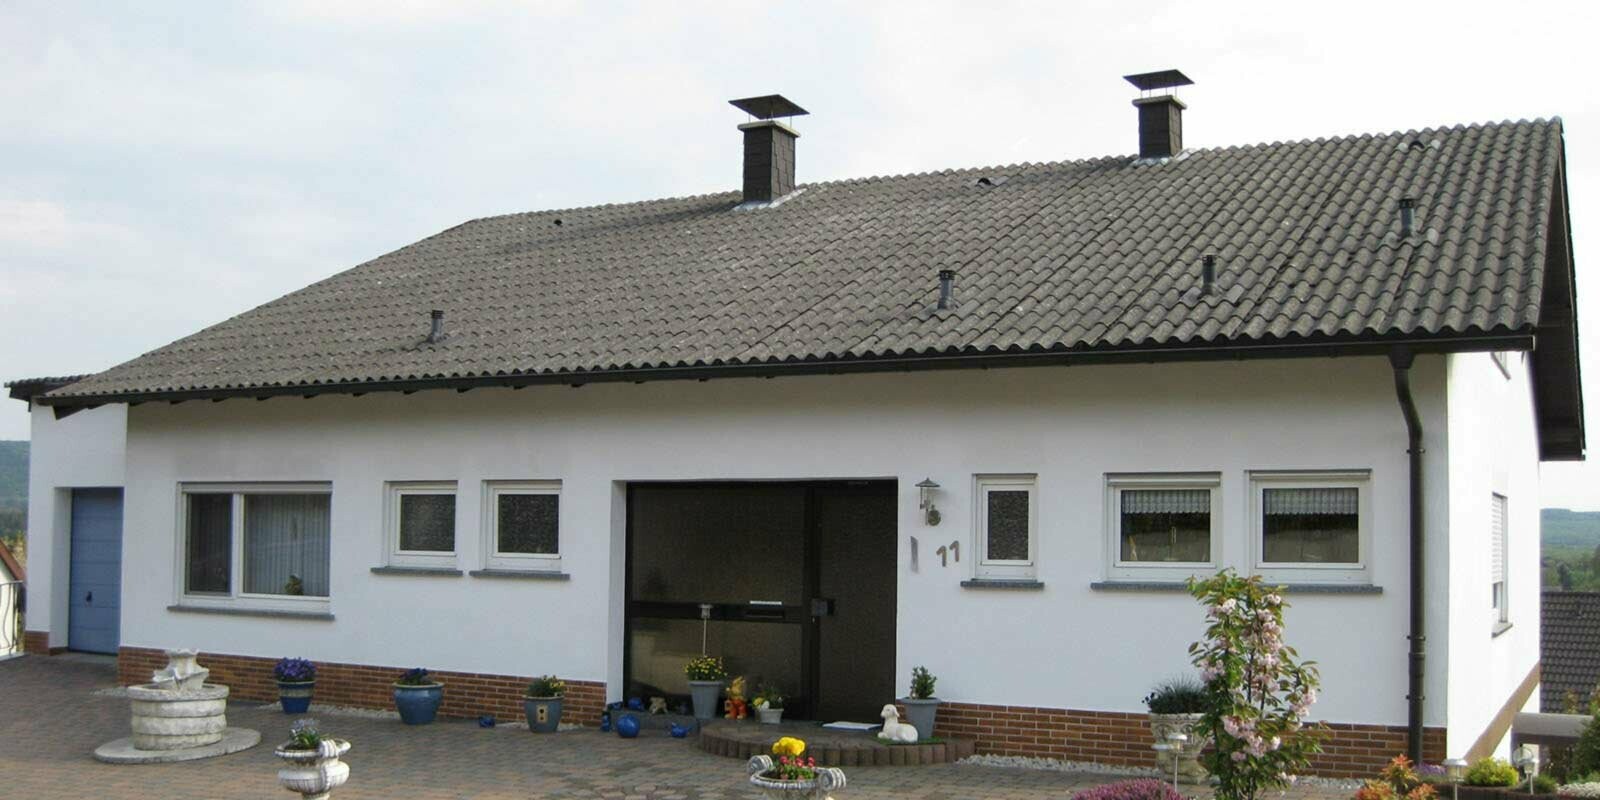 Maison individuelle avec fibrociment ondulé avant la rénovation de toiture à l’aide de tuiles PREFA